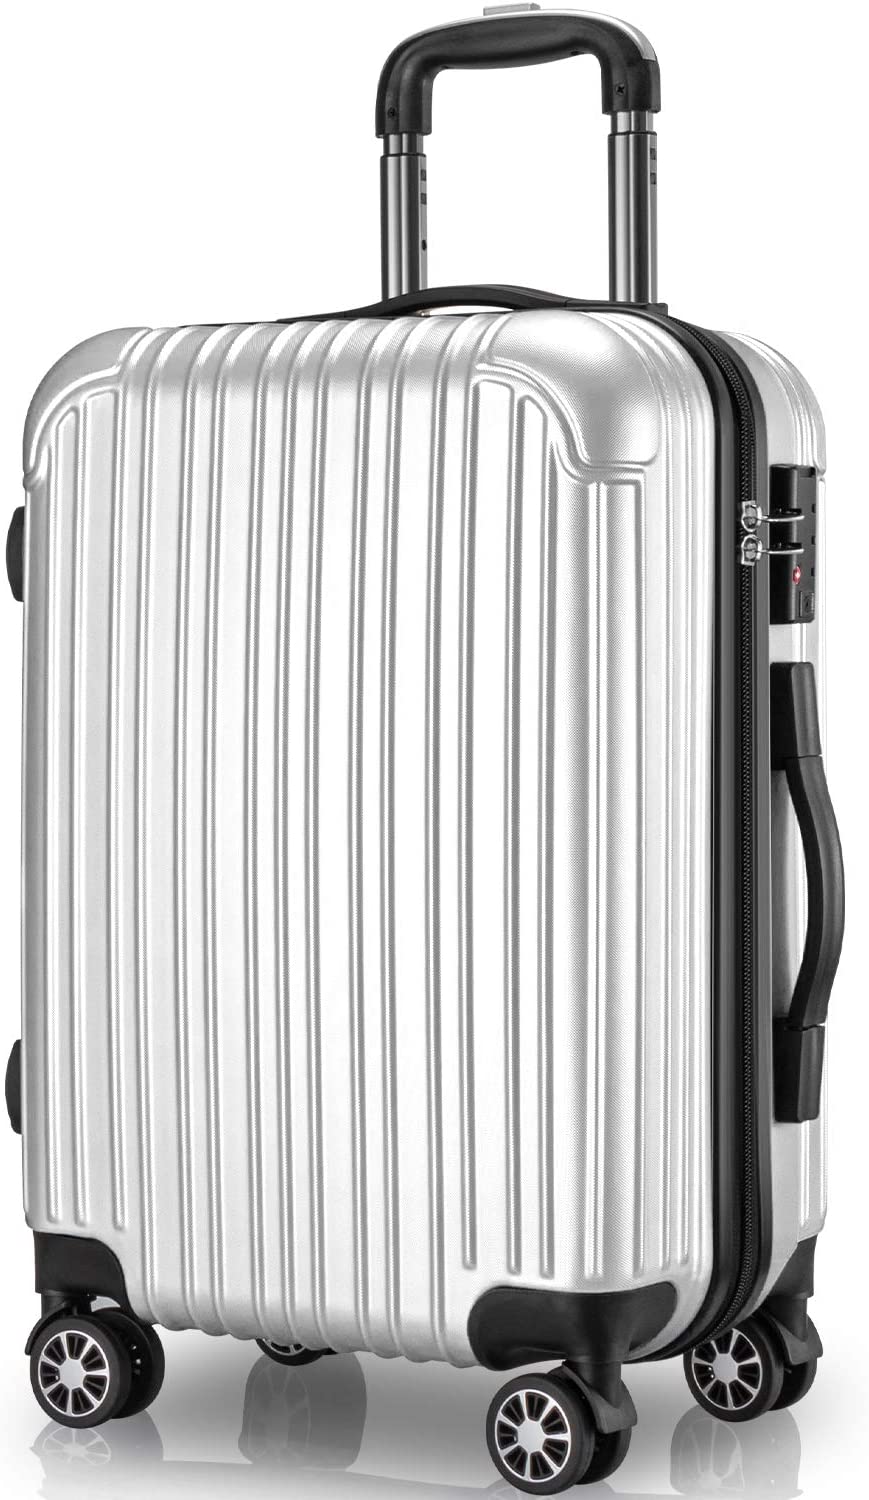 スーツケース 65L M サイズ 4〜7泊 キャリーケース キャリーバッグ 旅行 ビジネス 出張 カバン バッグ 中型 軽量 おしゃれ 静音 ファスナー